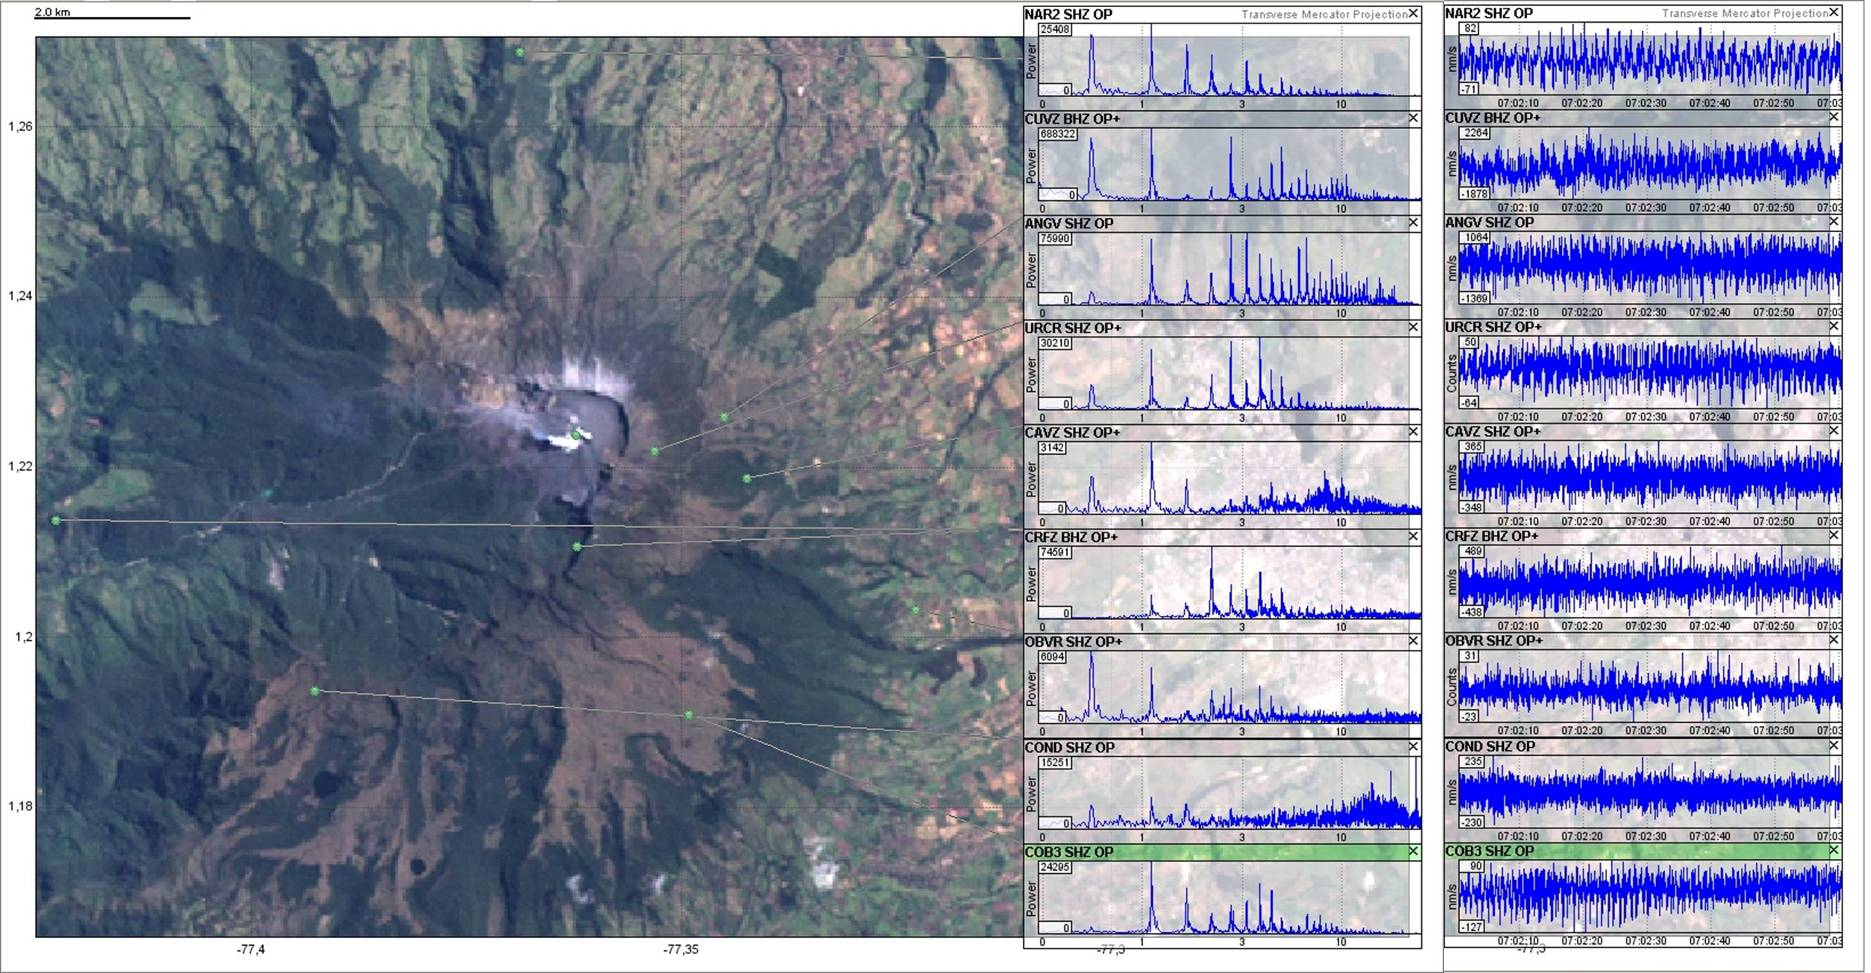 Figura 4. Segmento del tremor armónico del día 10 de febrero a las 2:02 a.m., como fue registrado por las estaciones que conforman la red de monitoreo sísmico de Galeras, cuyas ubicaciones se muestran en el mapa a la izquierda.